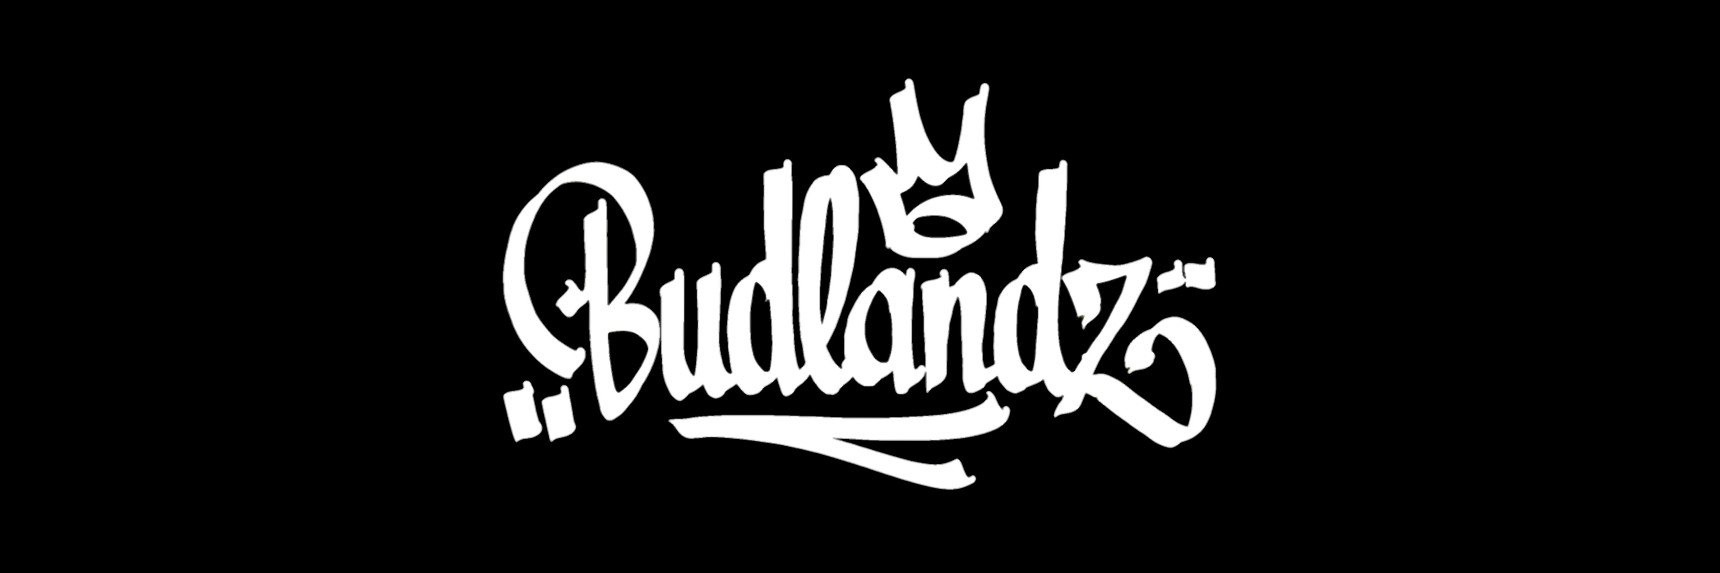 Budlandz logo